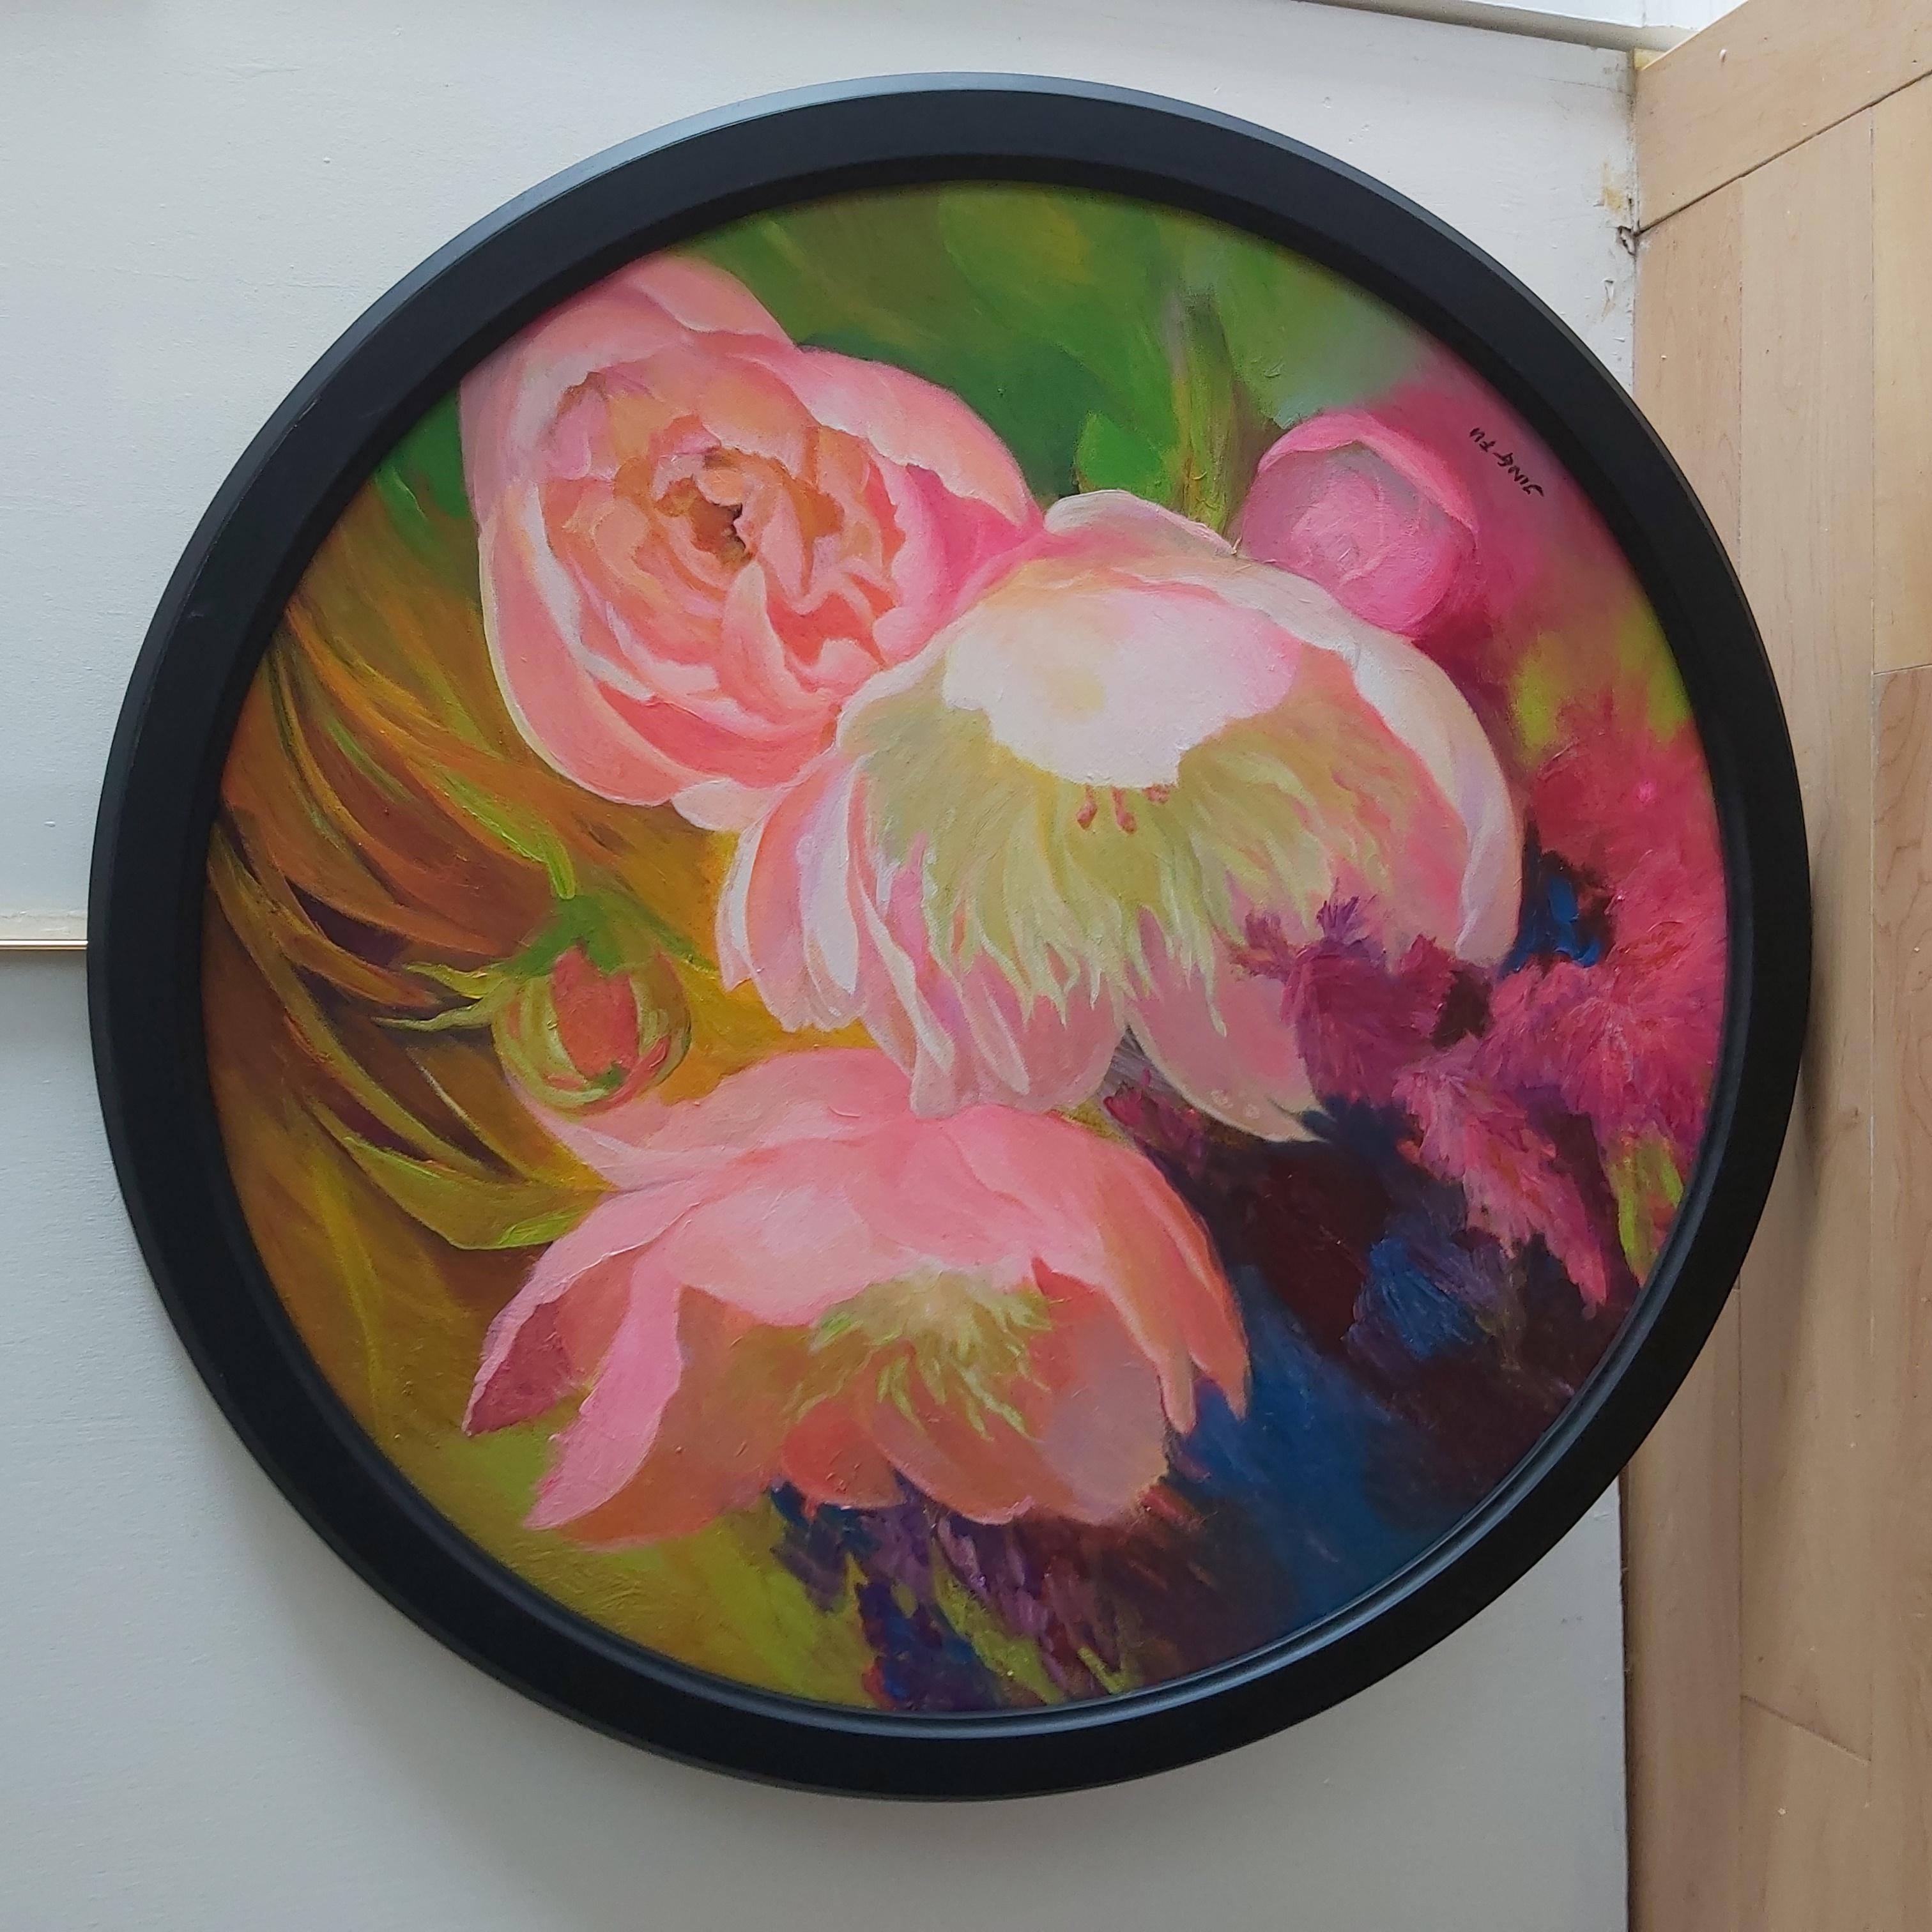 Spring Call ist eine lebendige Darstellung von rosafarbenen Blumen inmitten einer farbenfrohen Flora.
Kommt mit dem schwarzen Rahmen und bereit zu hängen.
